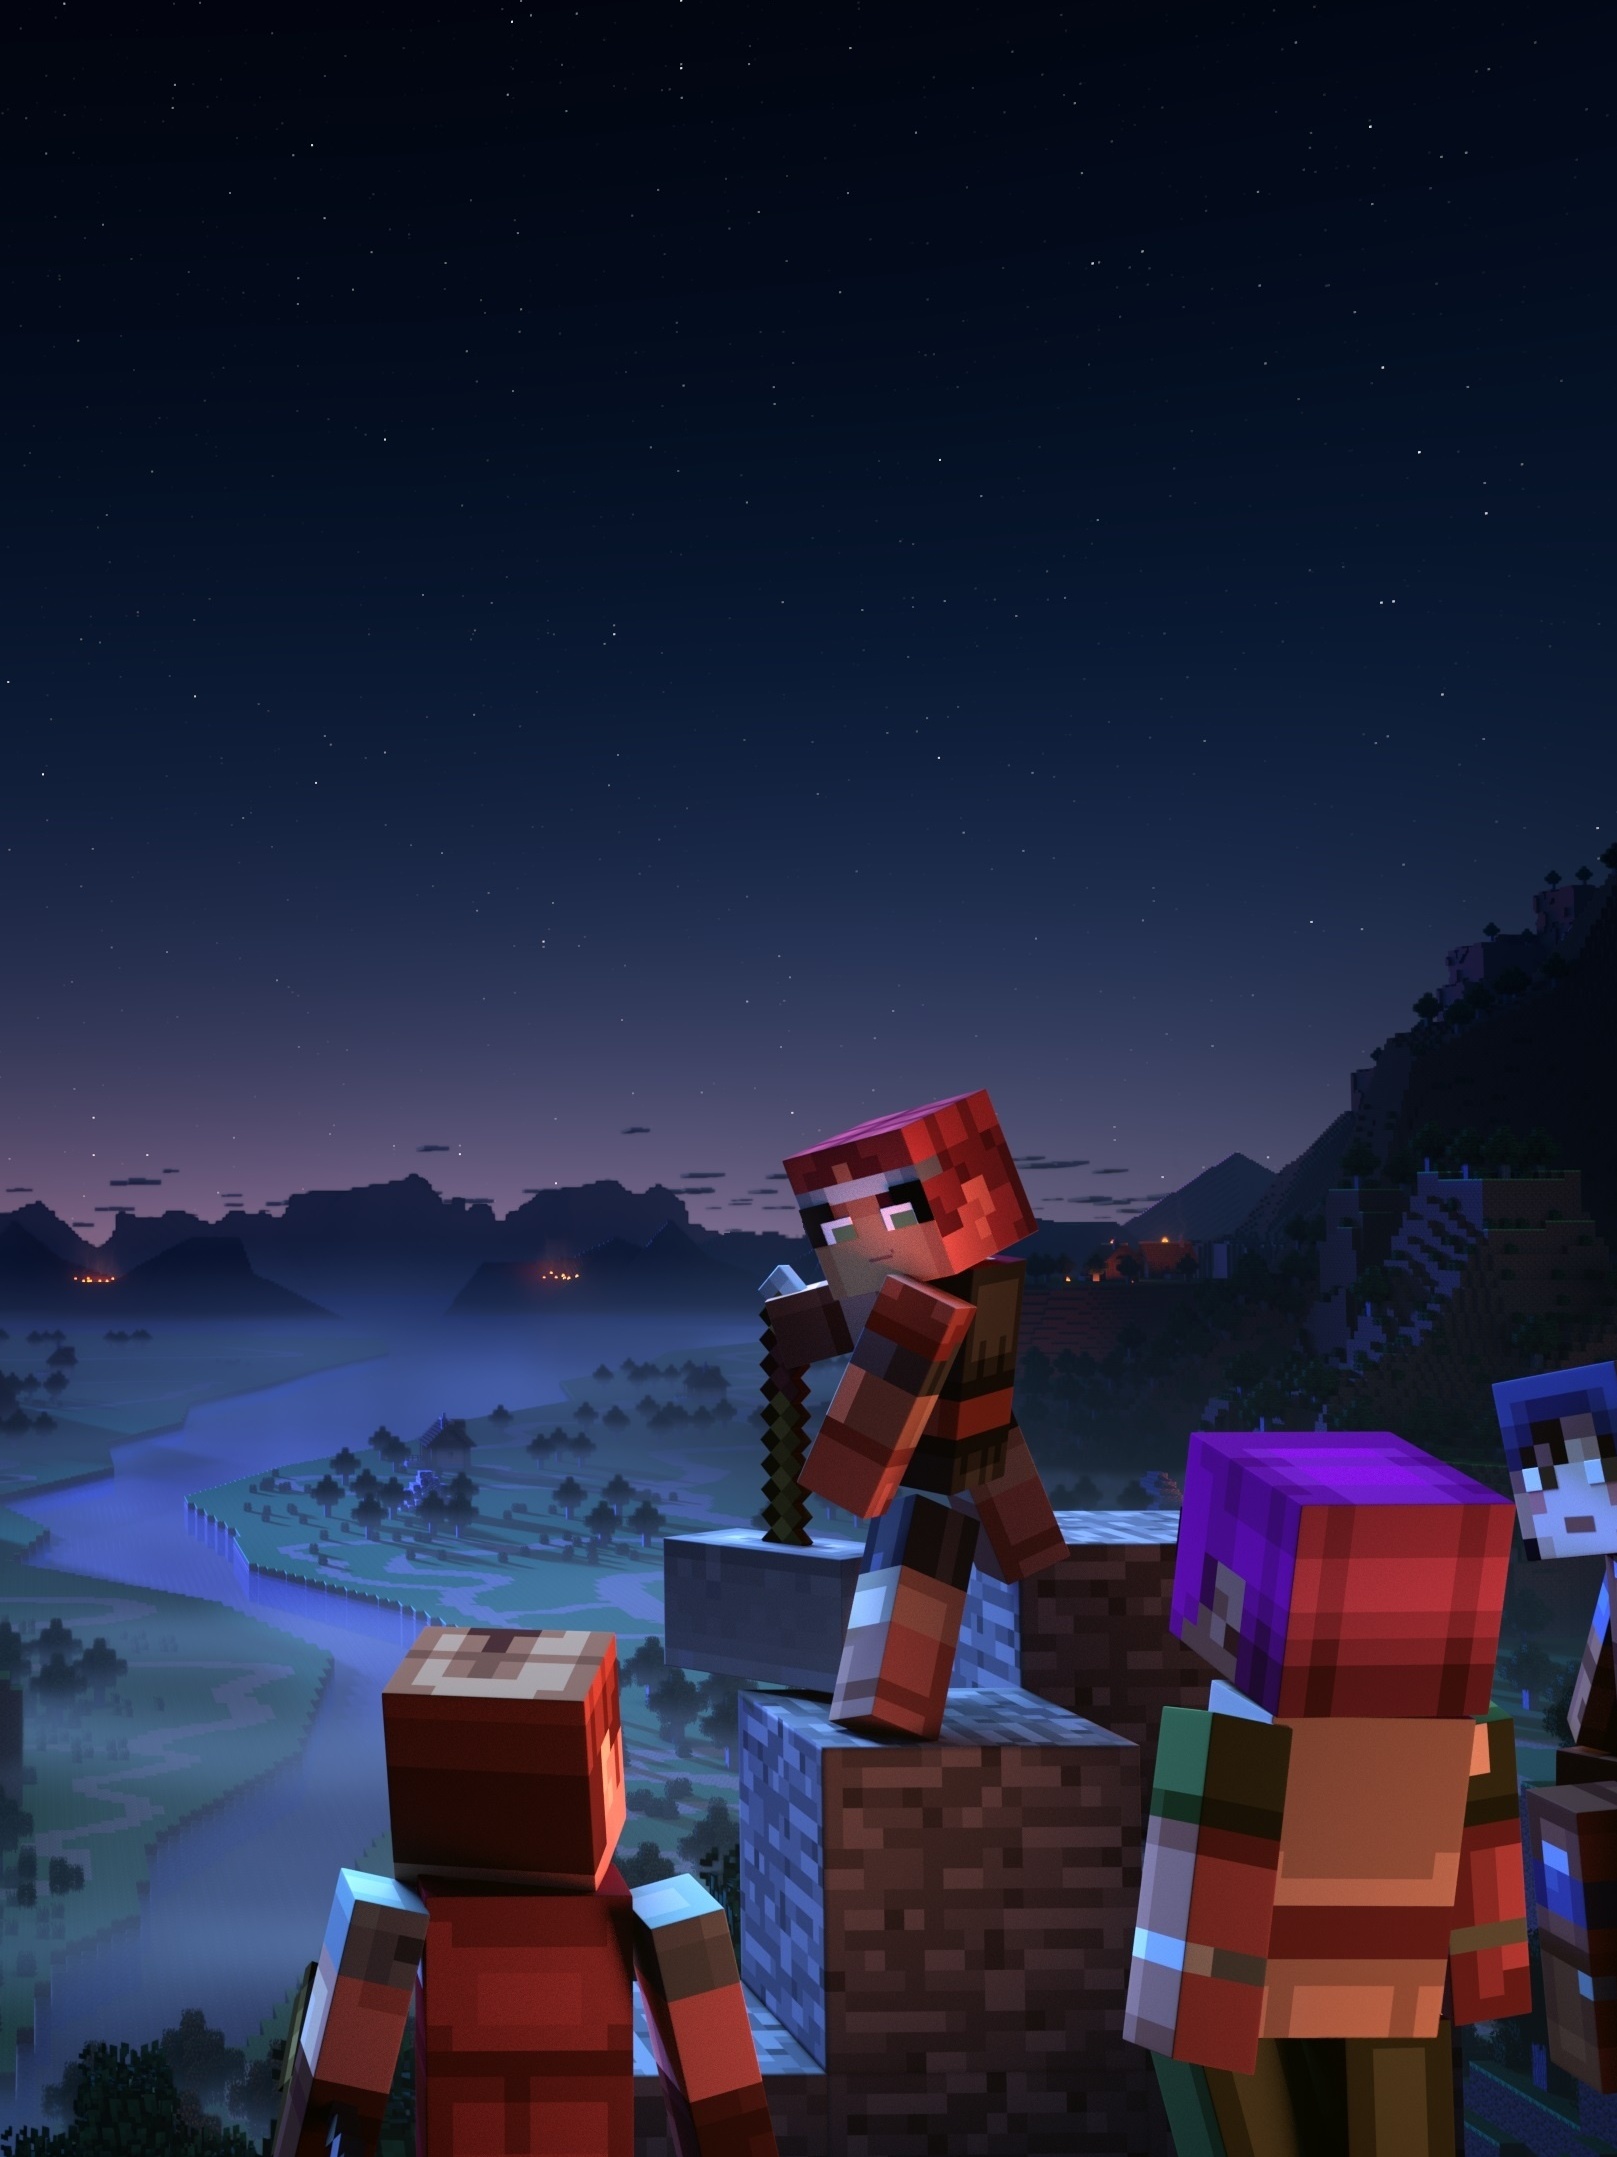 Canto do Cisne: Minecraft: Story Mode, da Telltale, estreia na Netflix -  Notícias - BOL